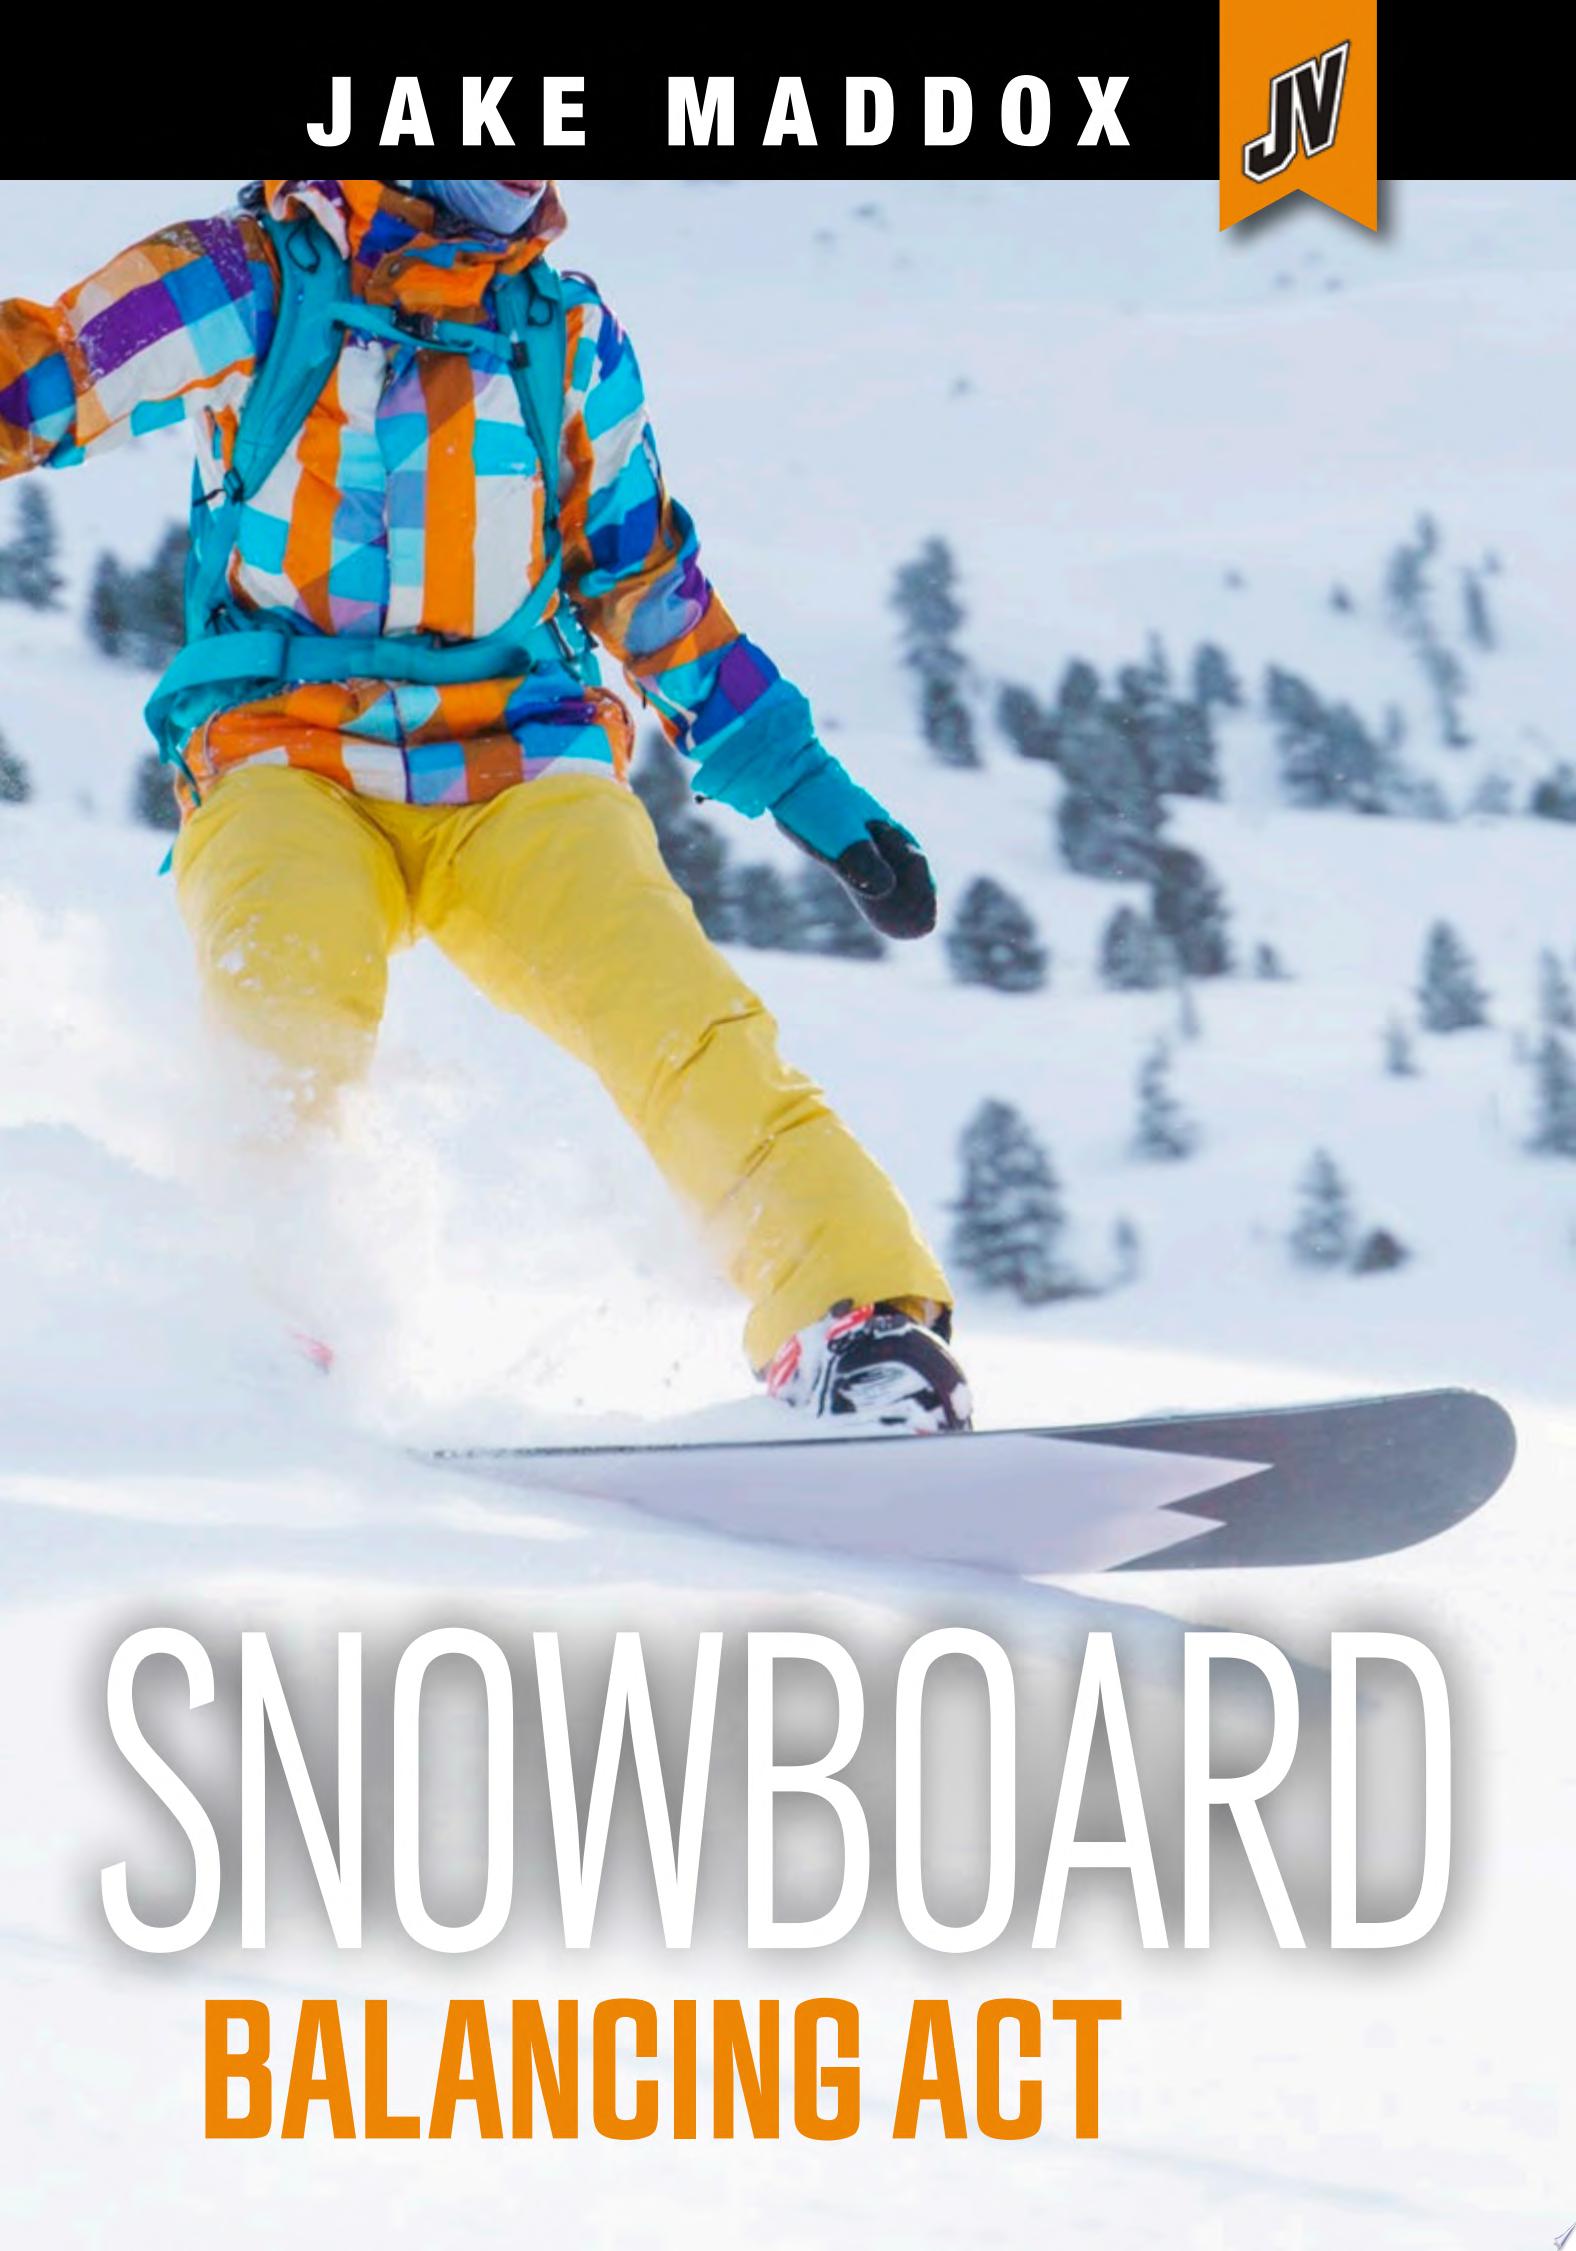 Image for "Snowboard Balancing Act"